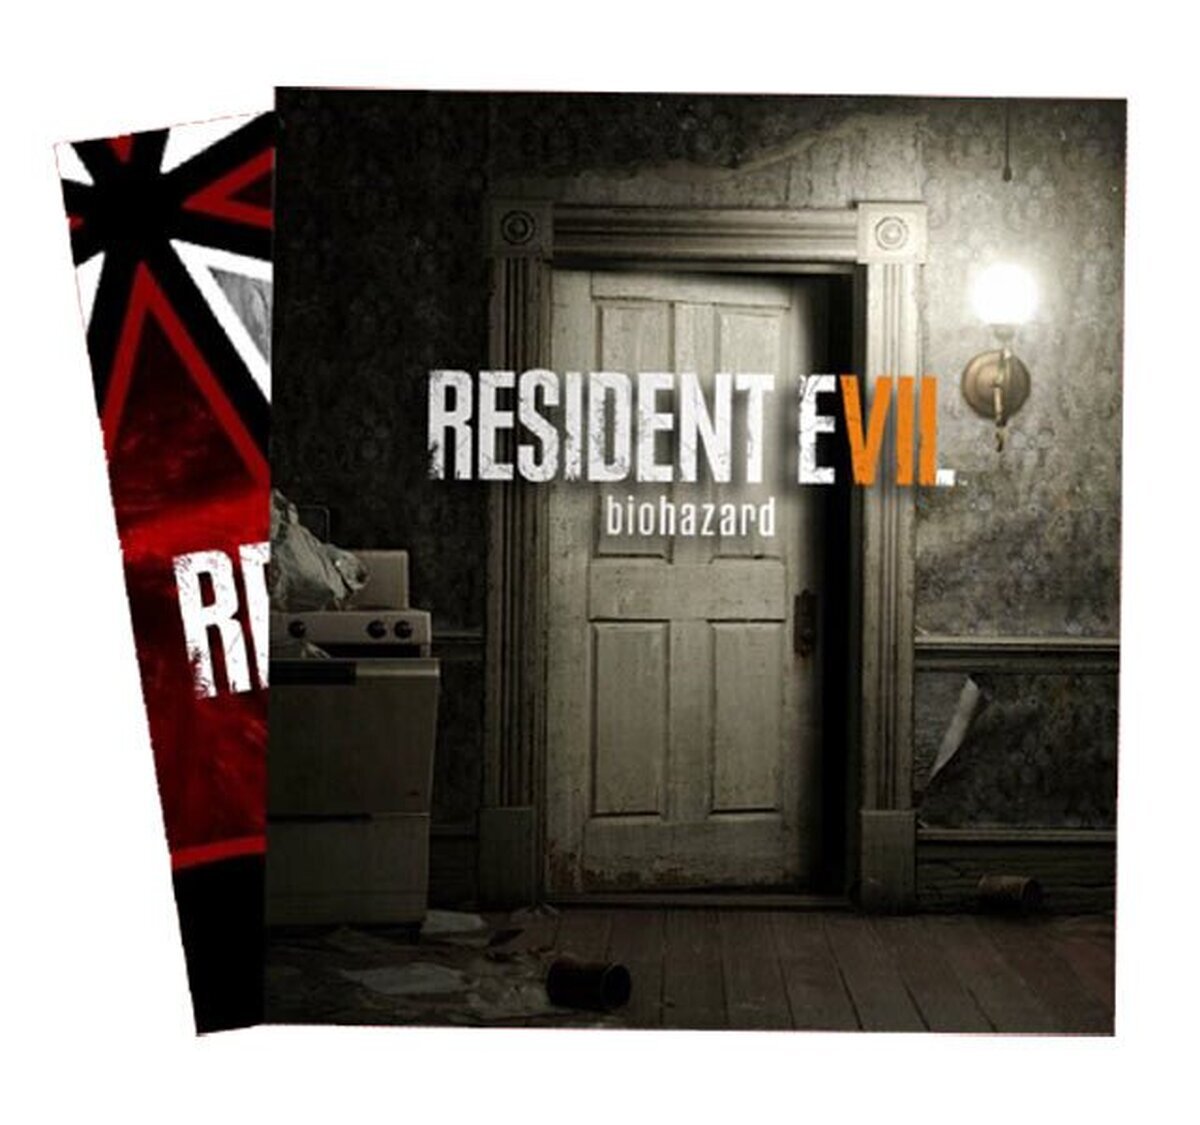 La edición coleccionista de Resident Evil 7 que incluye un dedo pero no el juego 